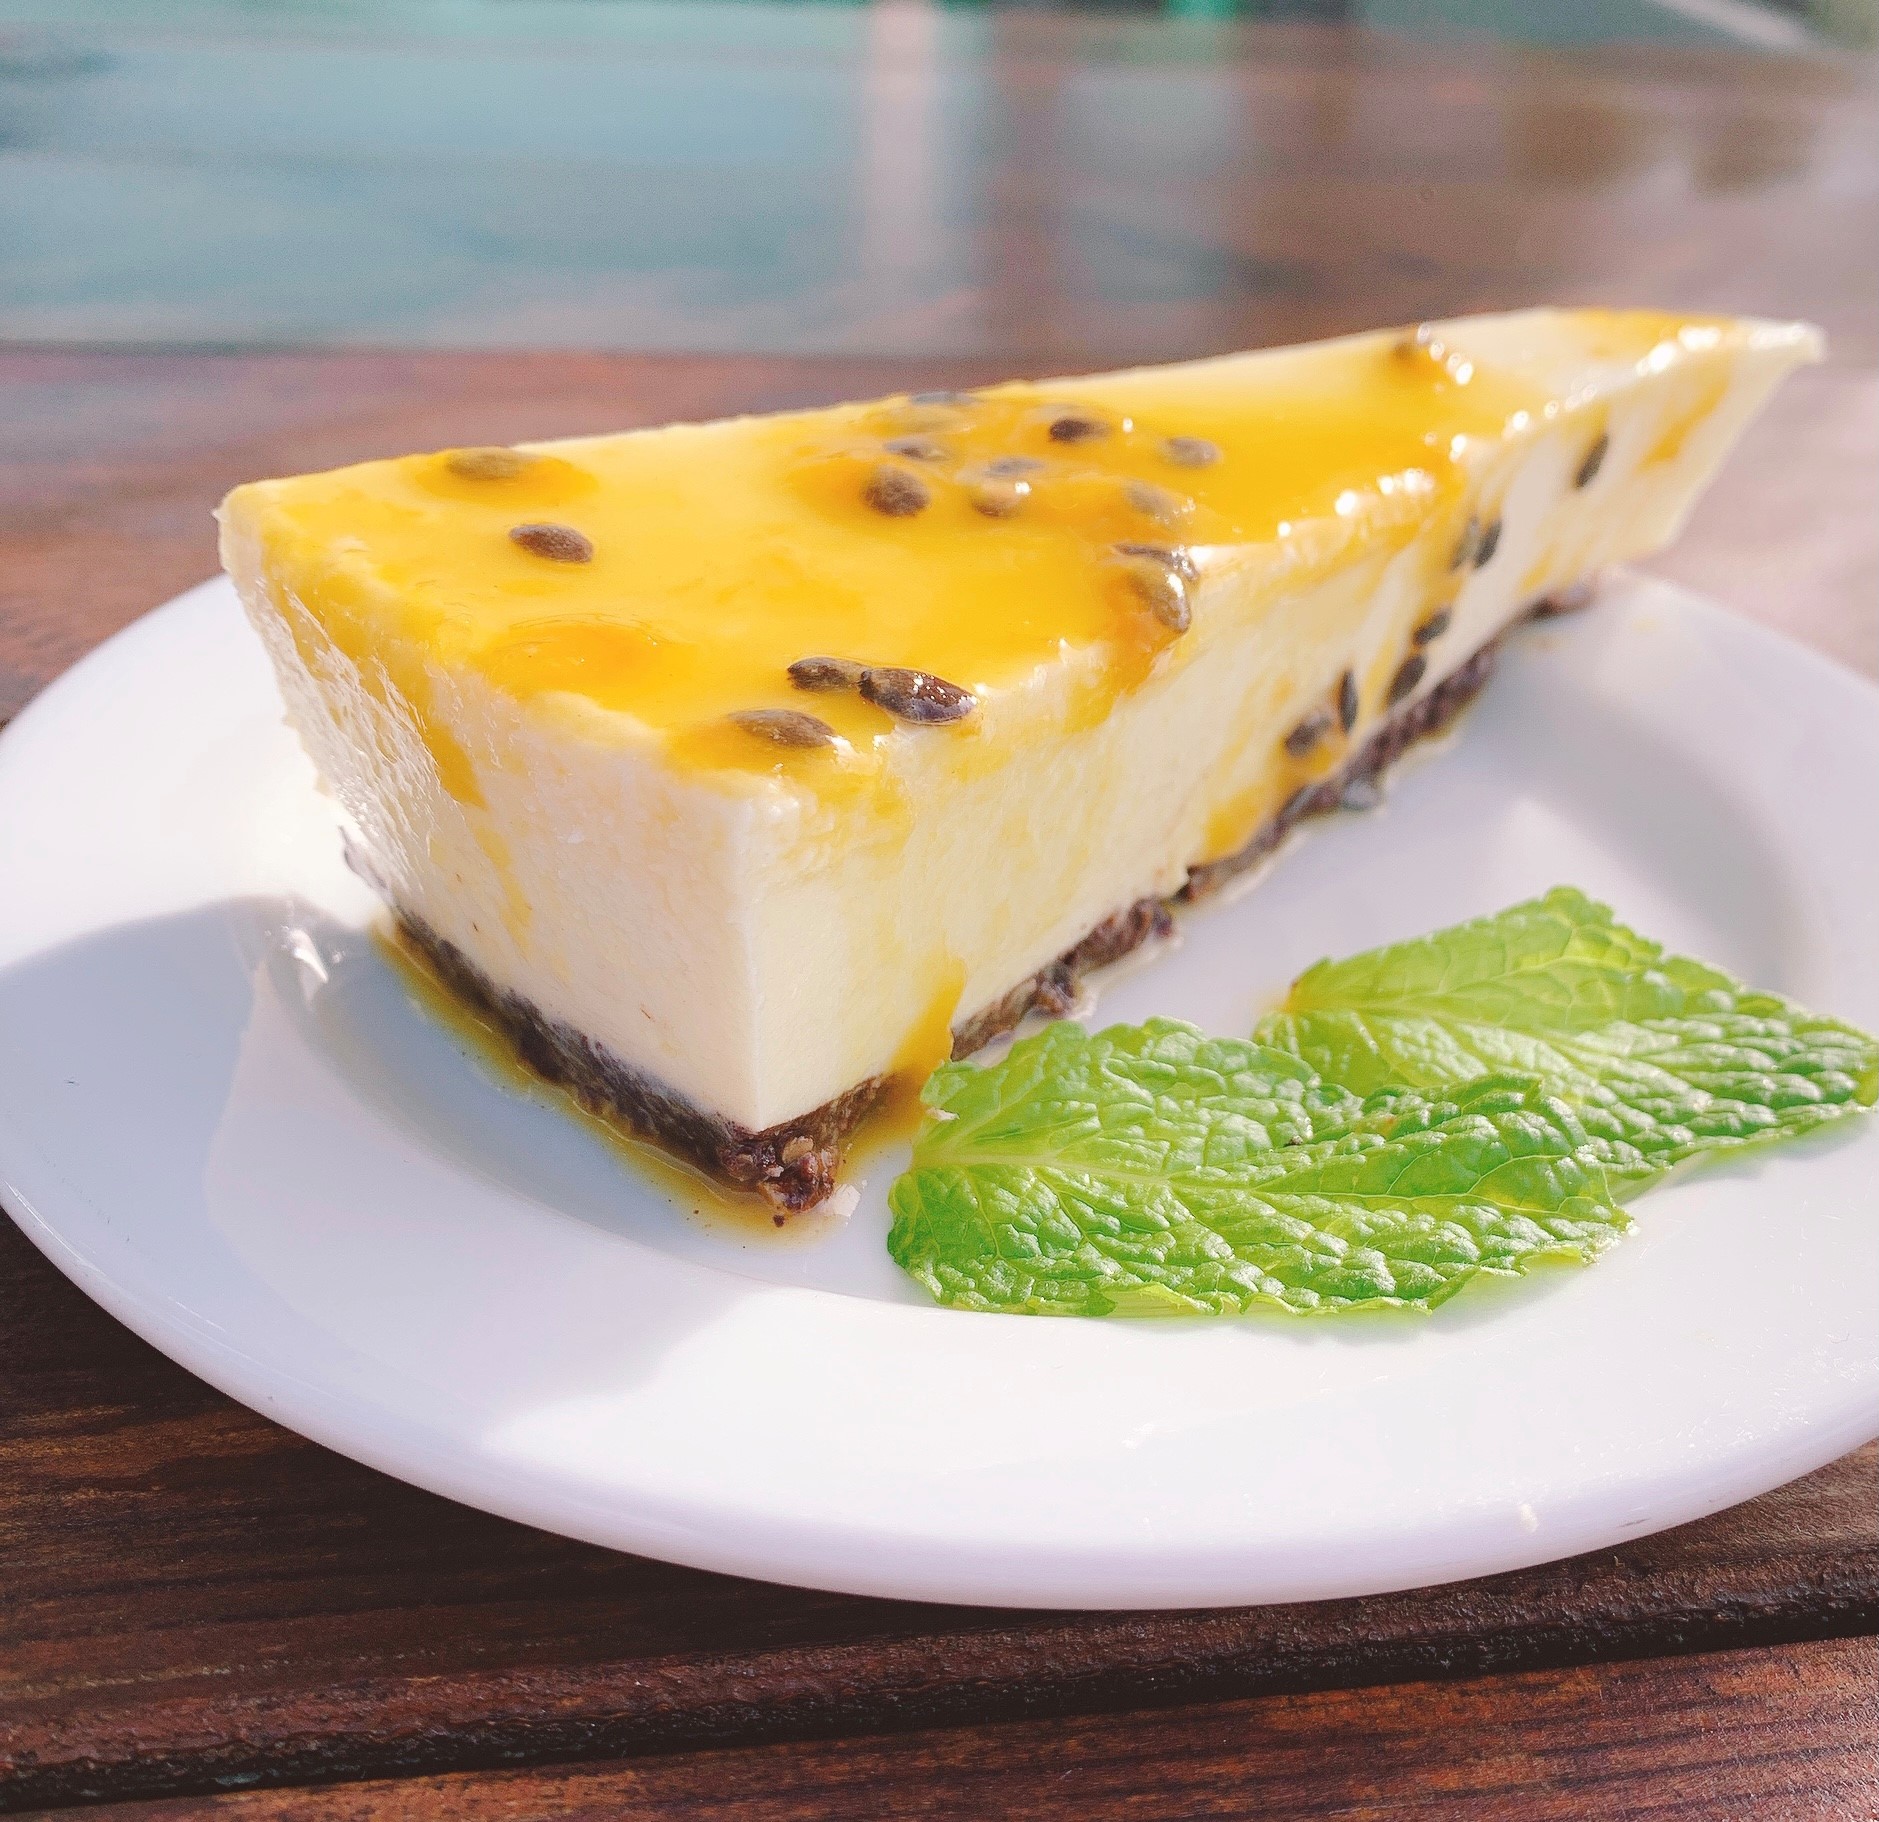 Cheesecake de Maracujá s/ glúten (1 fatia) - Restaurante Origem ...